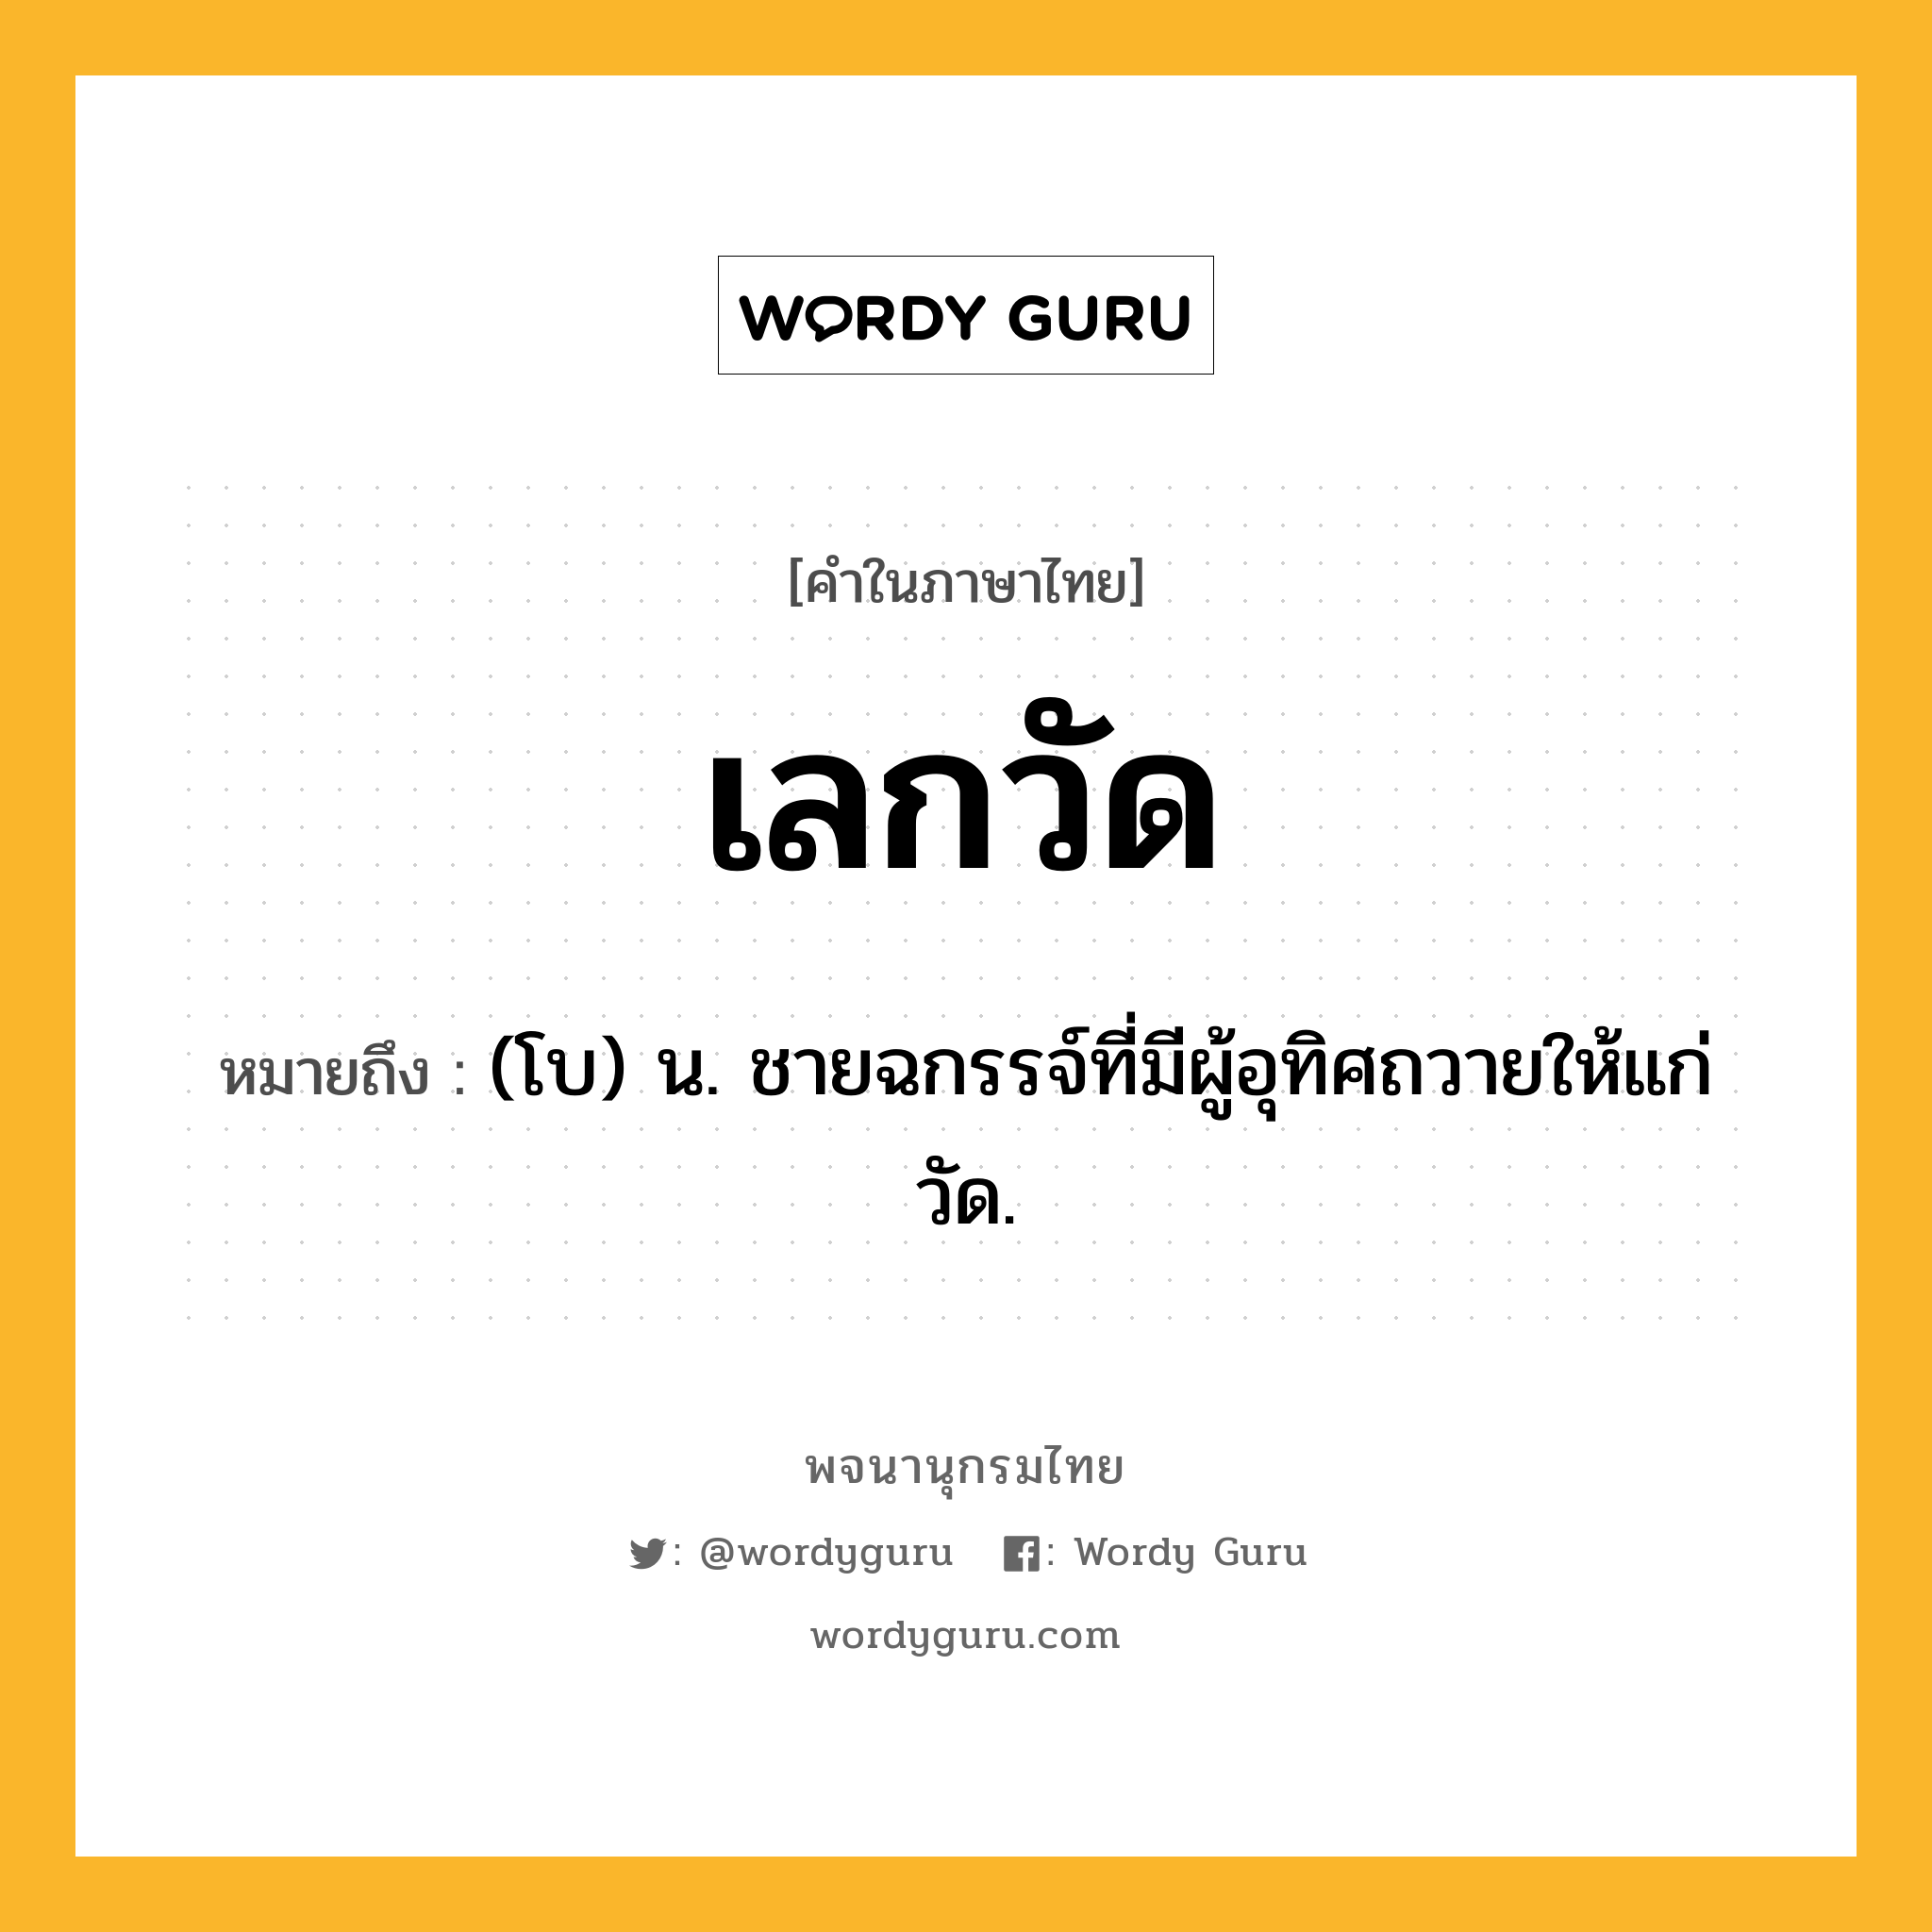 เลกวัด ความหมาย หมายถึงอะไร?, คำในภาษาไทย เลกวัด หมายถึง (โบ) น. ชายฉกรรจ์ที่มีผู้อุทิศถวายให้แก่วัด.